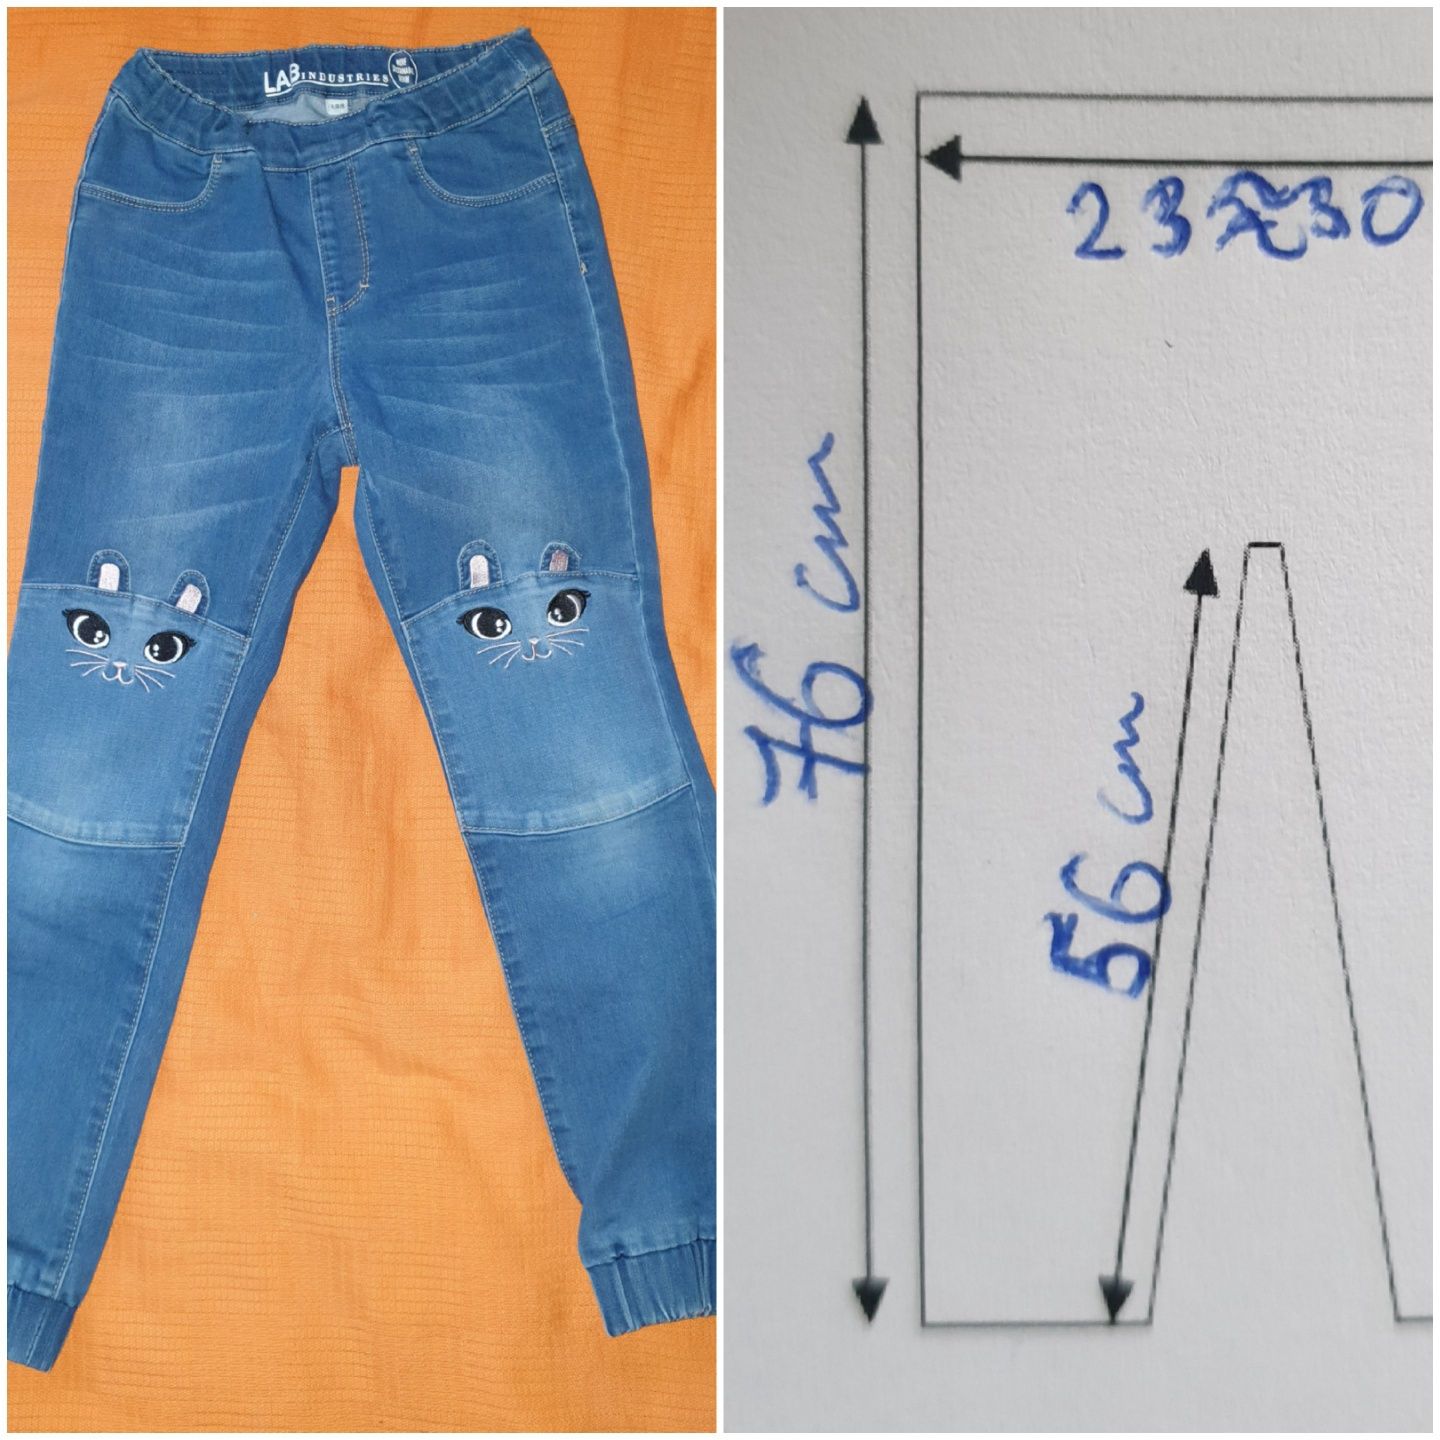 Spodnie jeansowe LABIndustries by Kappahl r. 128 / 134